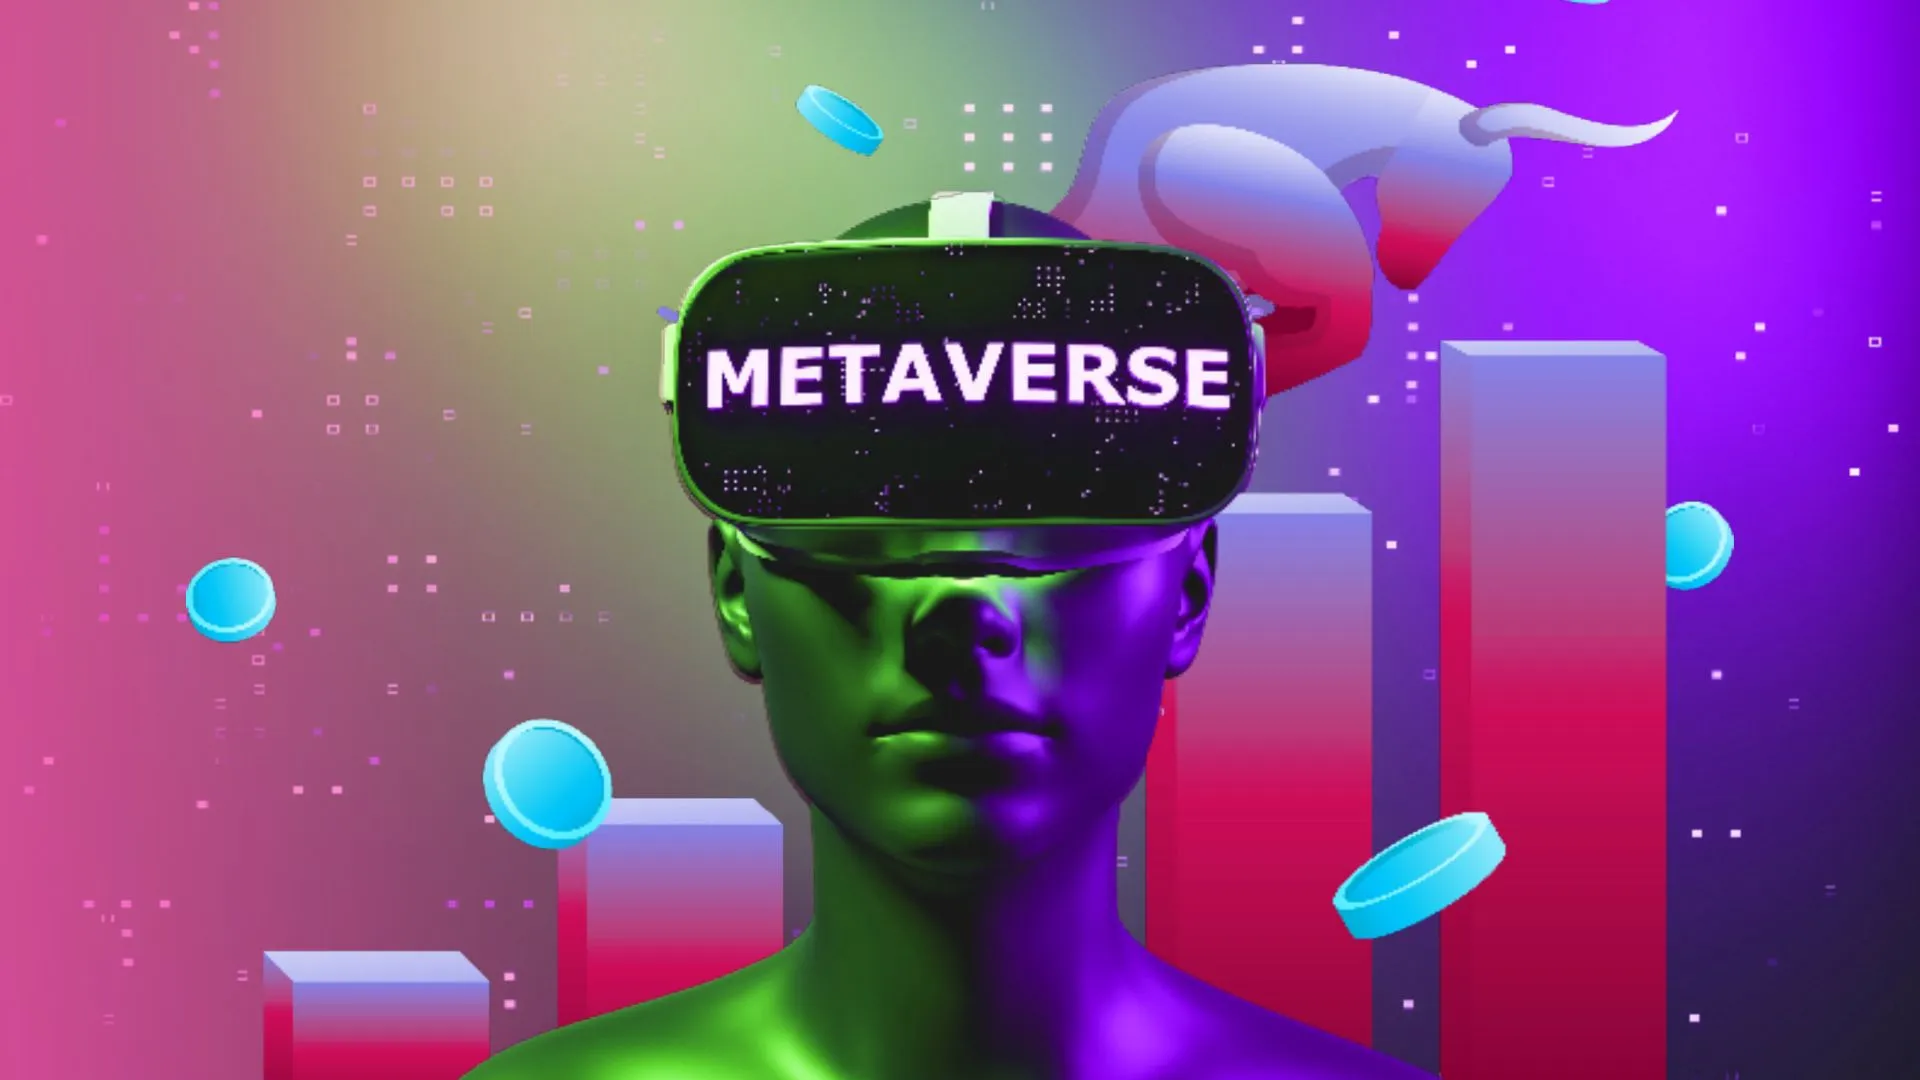 这是一张描绘虚拟现实概念的图片，展示一个佩戴着写有“METAVERSE”字样头盔的人类头像，背景是彩色的抽象图形。